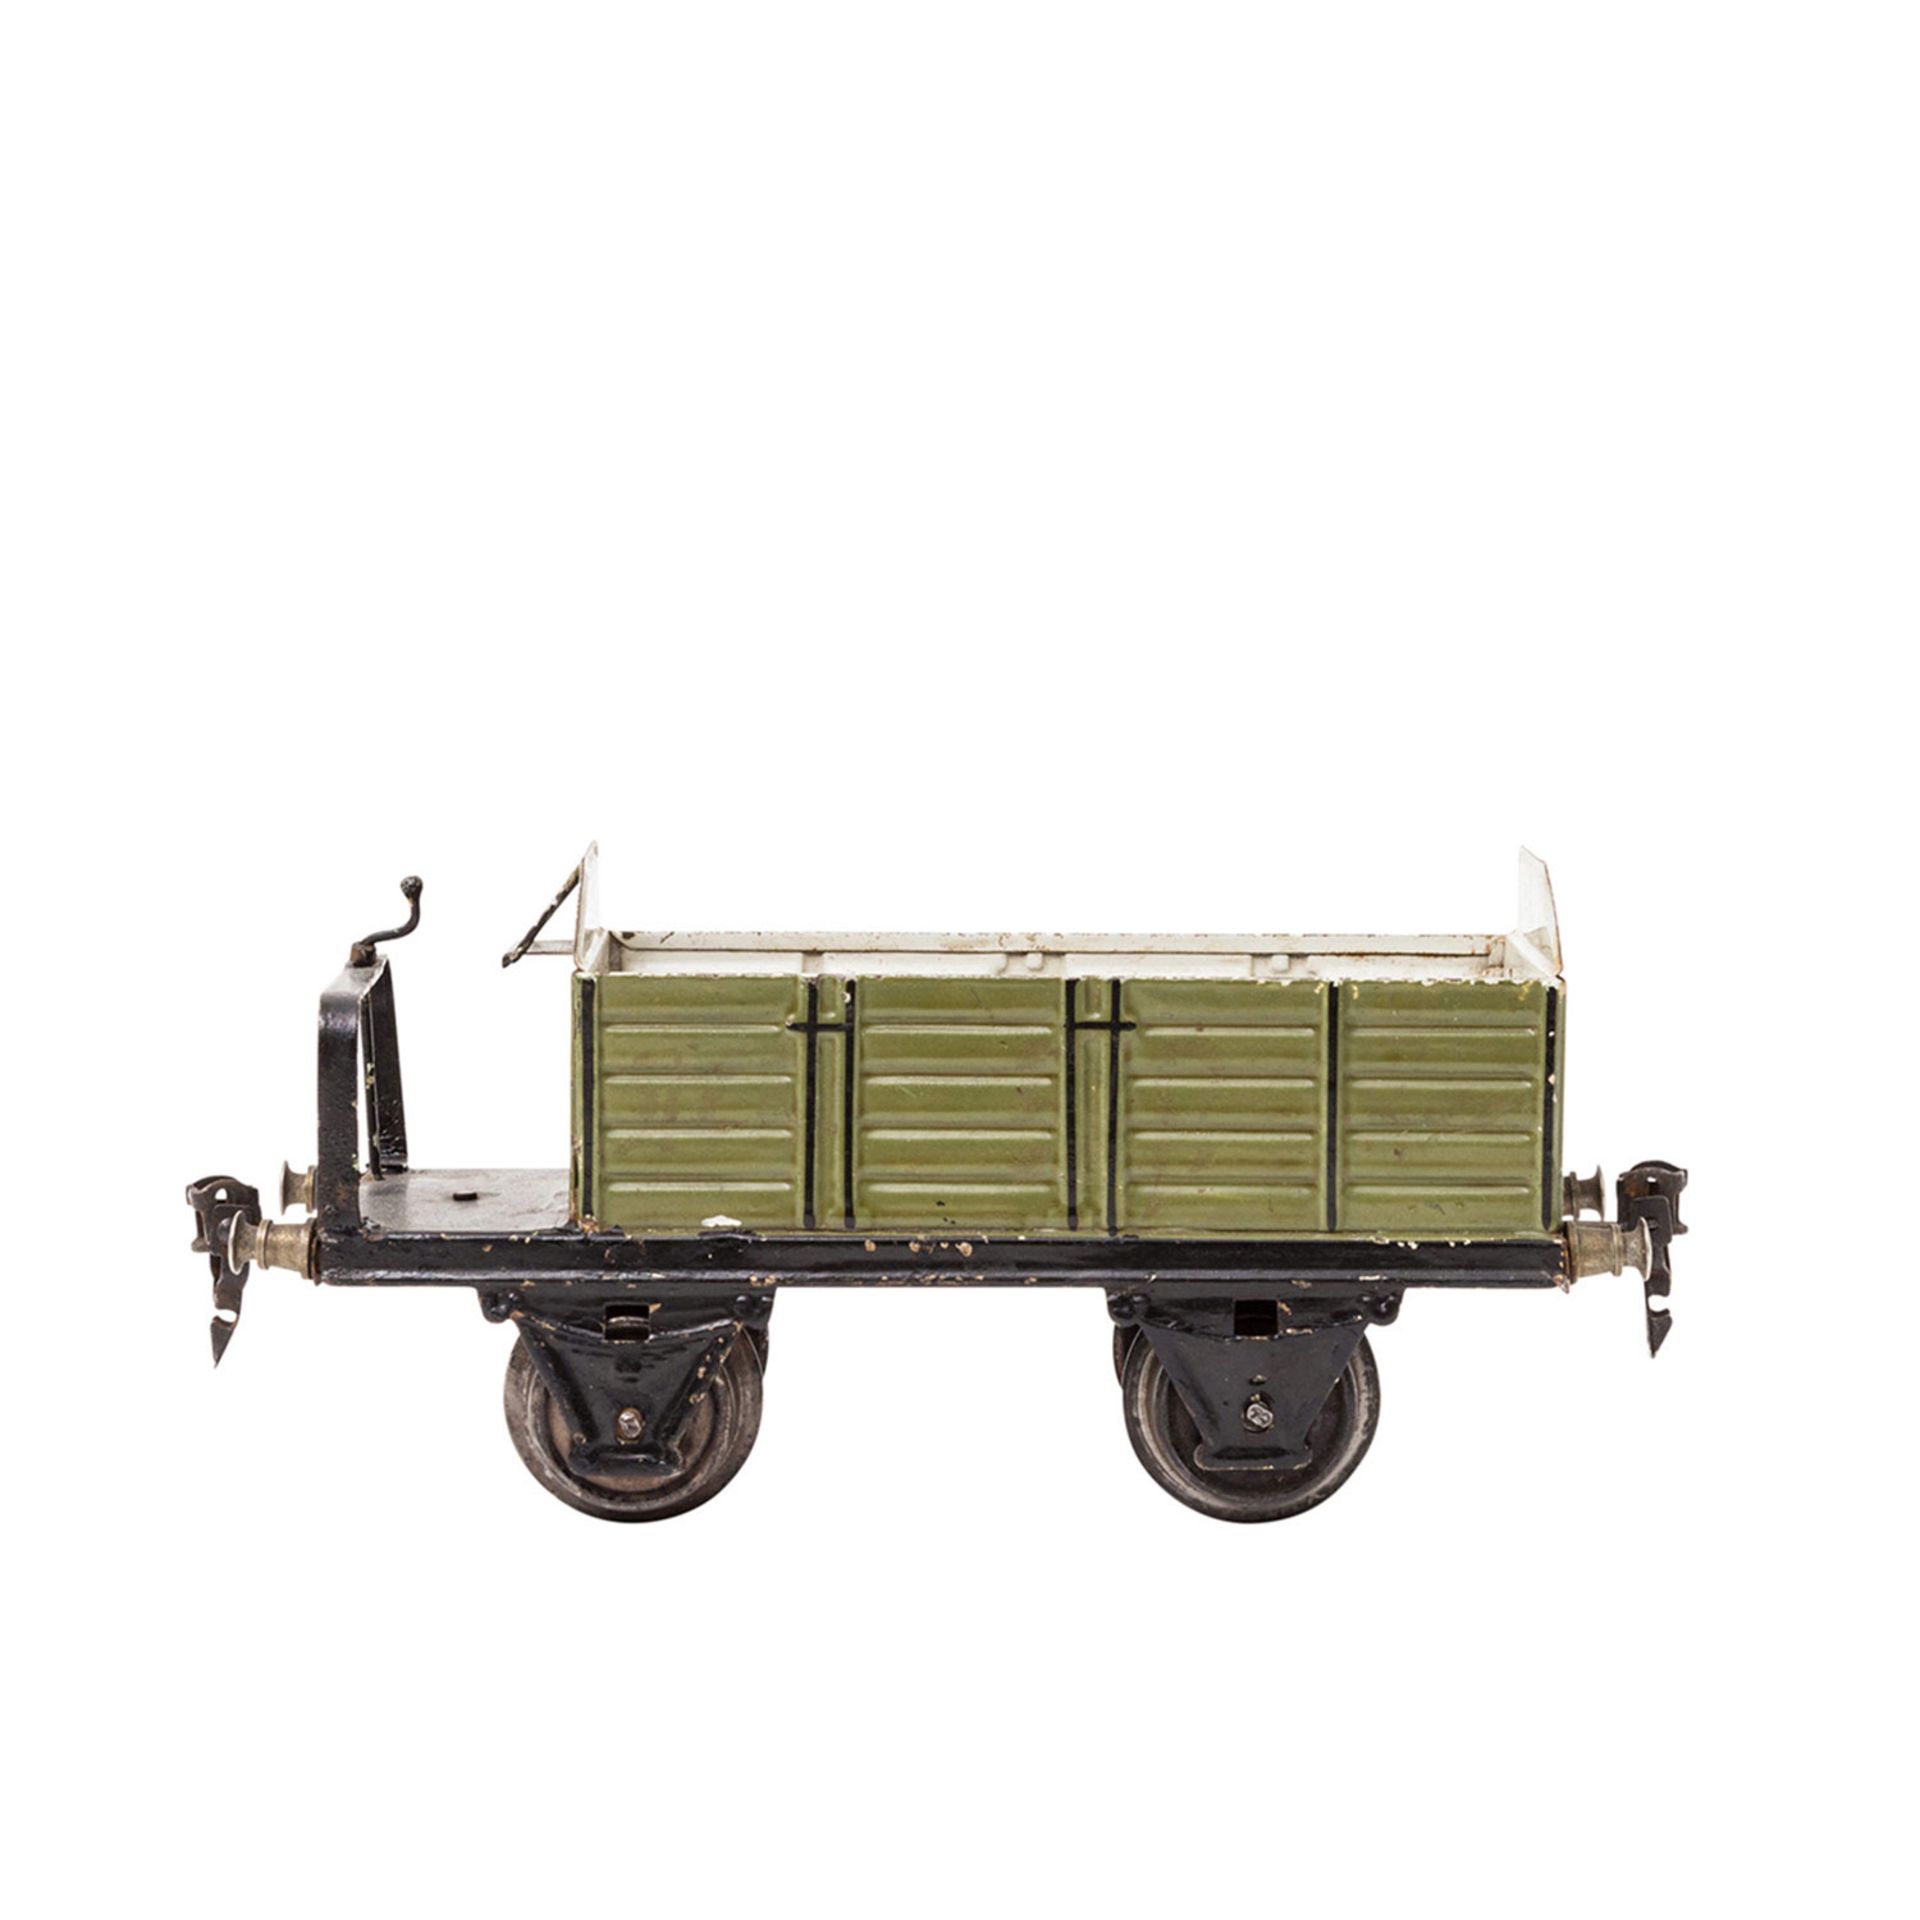 MÄRKLIN offener und gedeckter Güterwagen 1918/1967, Spur 1, Blech, grün bzw. rotbraun lack., auf - Bild 3 aus 4